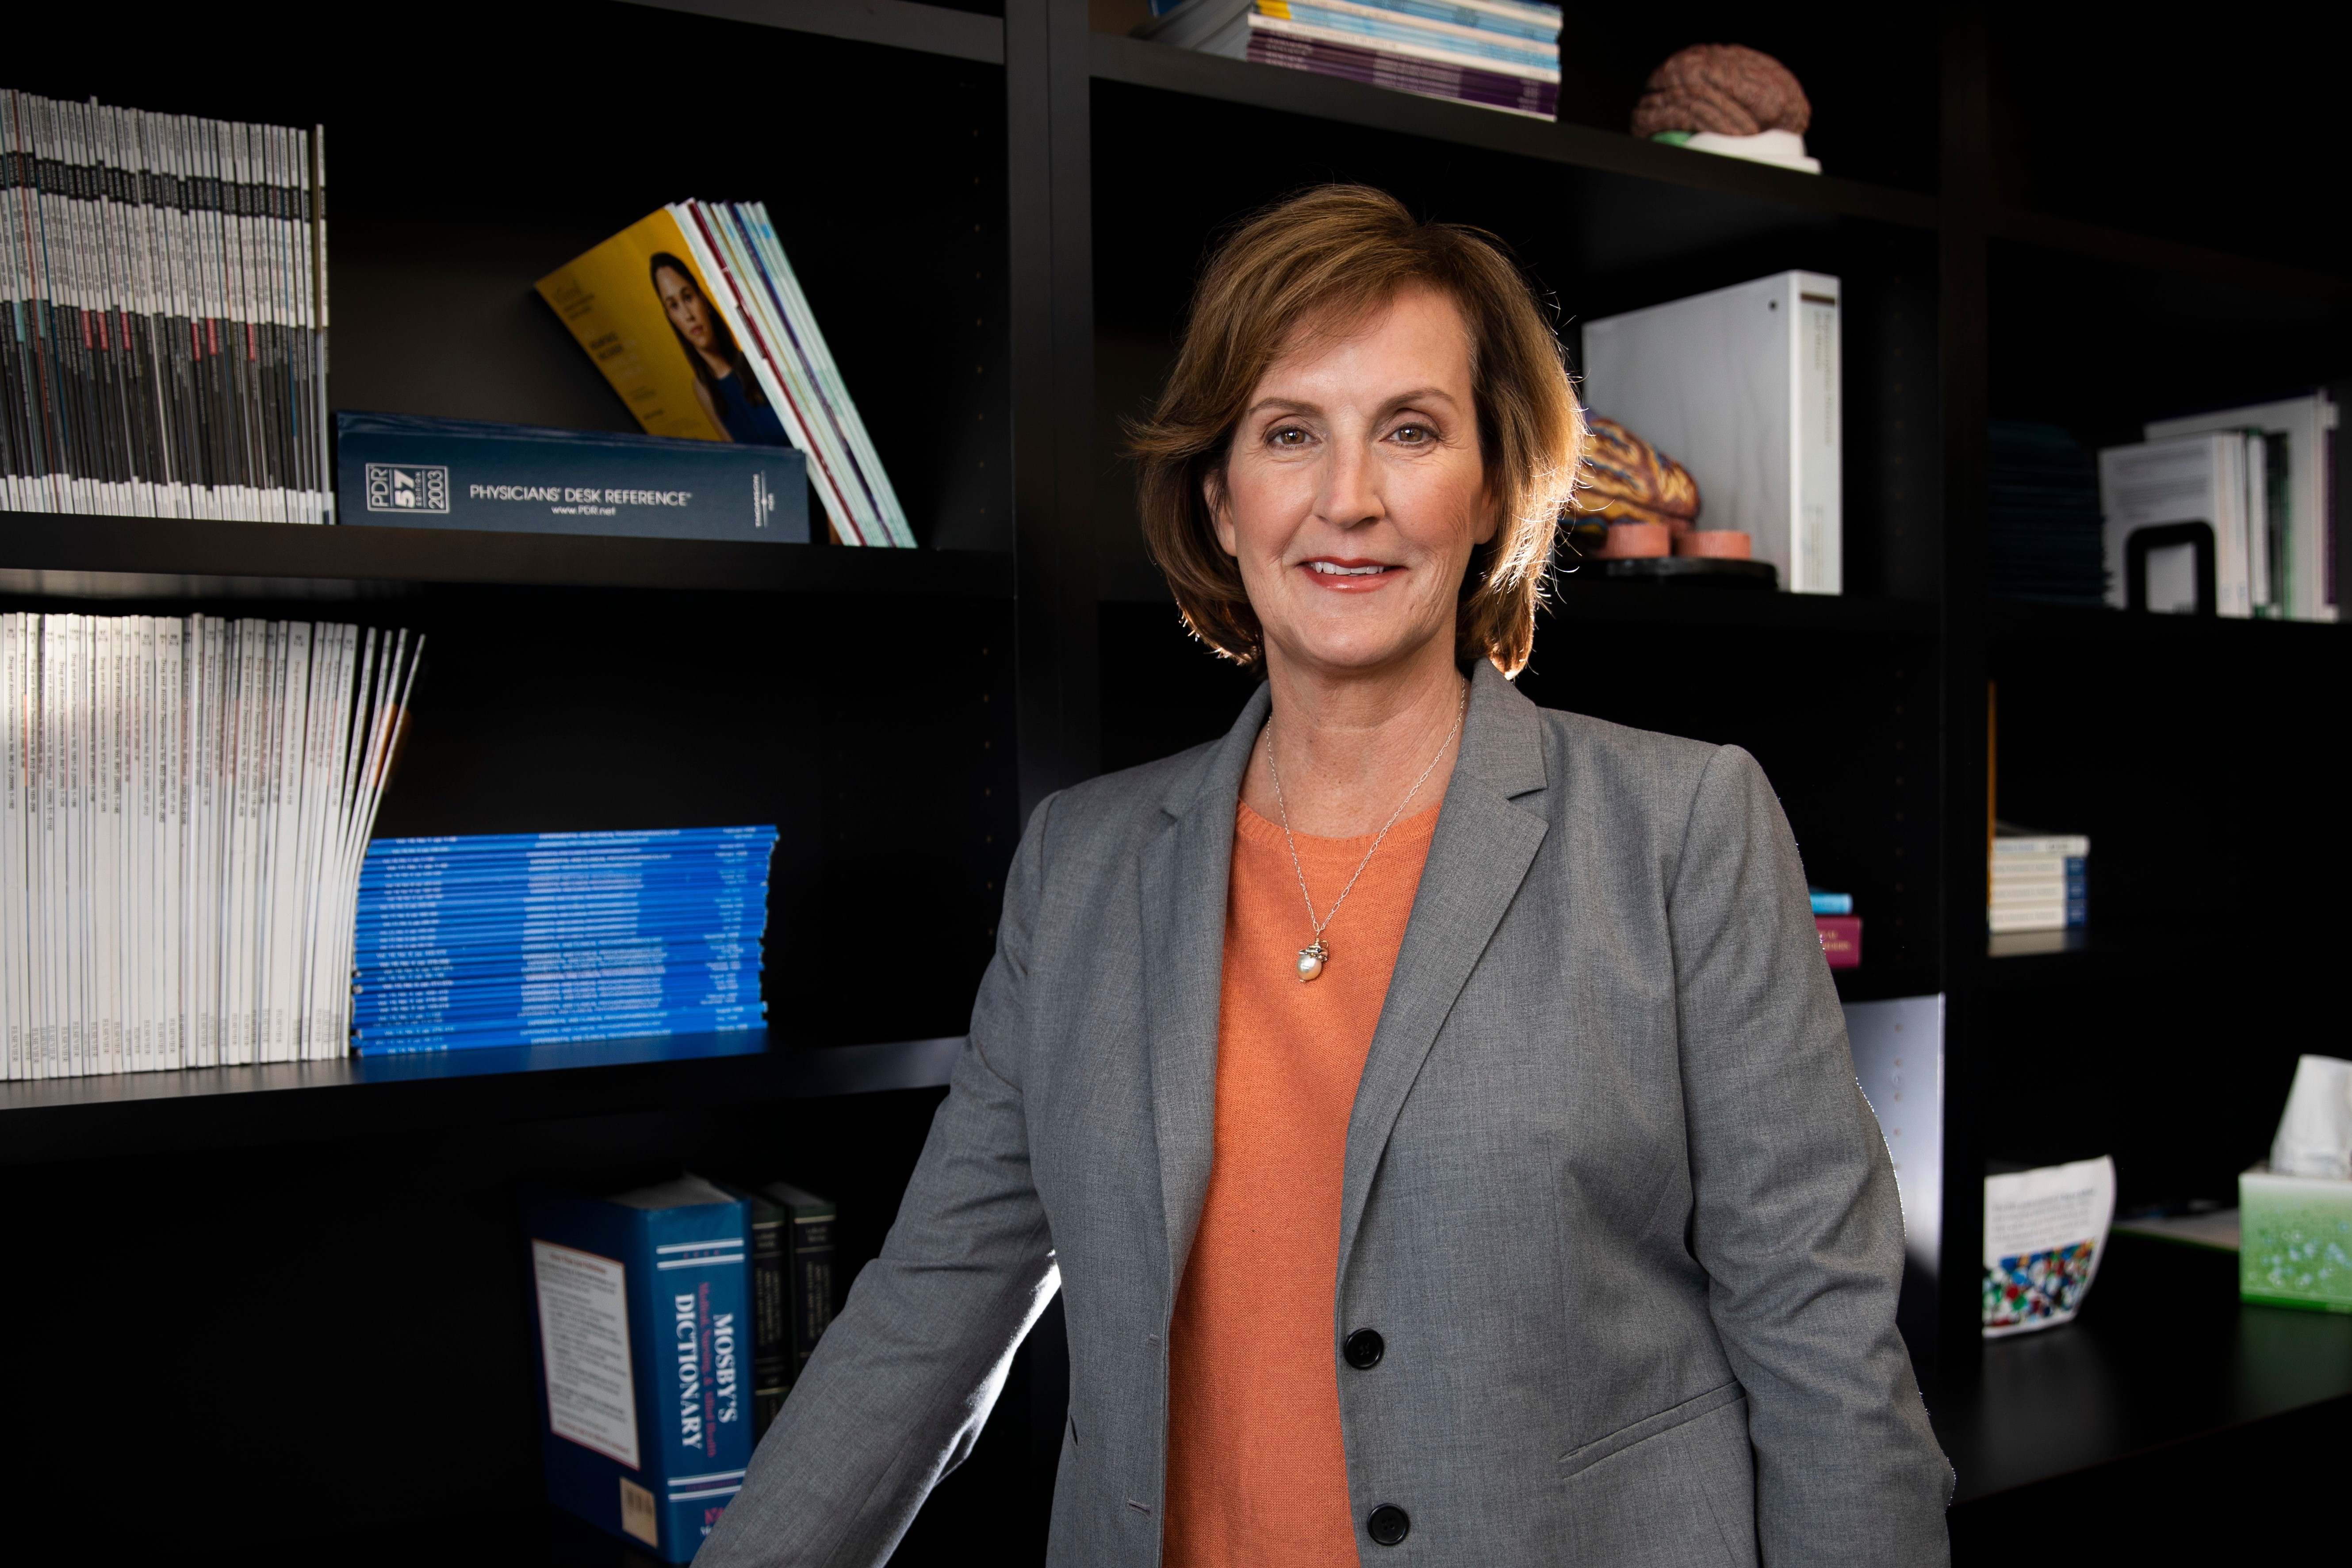 Dr. Sharon Walsh, Professor of Behavioral Science